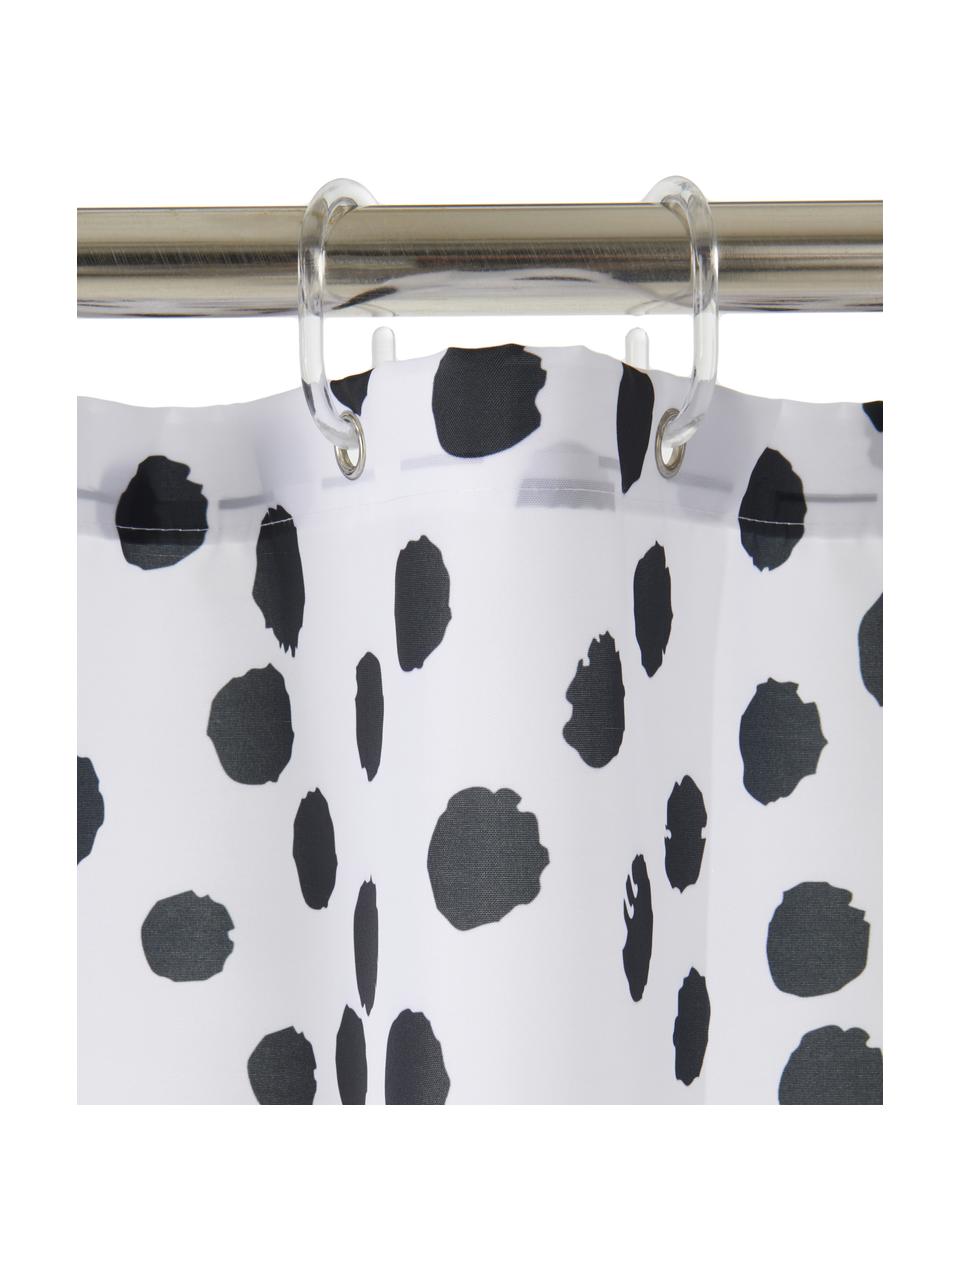 Douchegordijn Danja, met stippels, 100% polyester
Waterafstotend, niet waterdicht, Wit, zwart, B 180 x L 200 cm